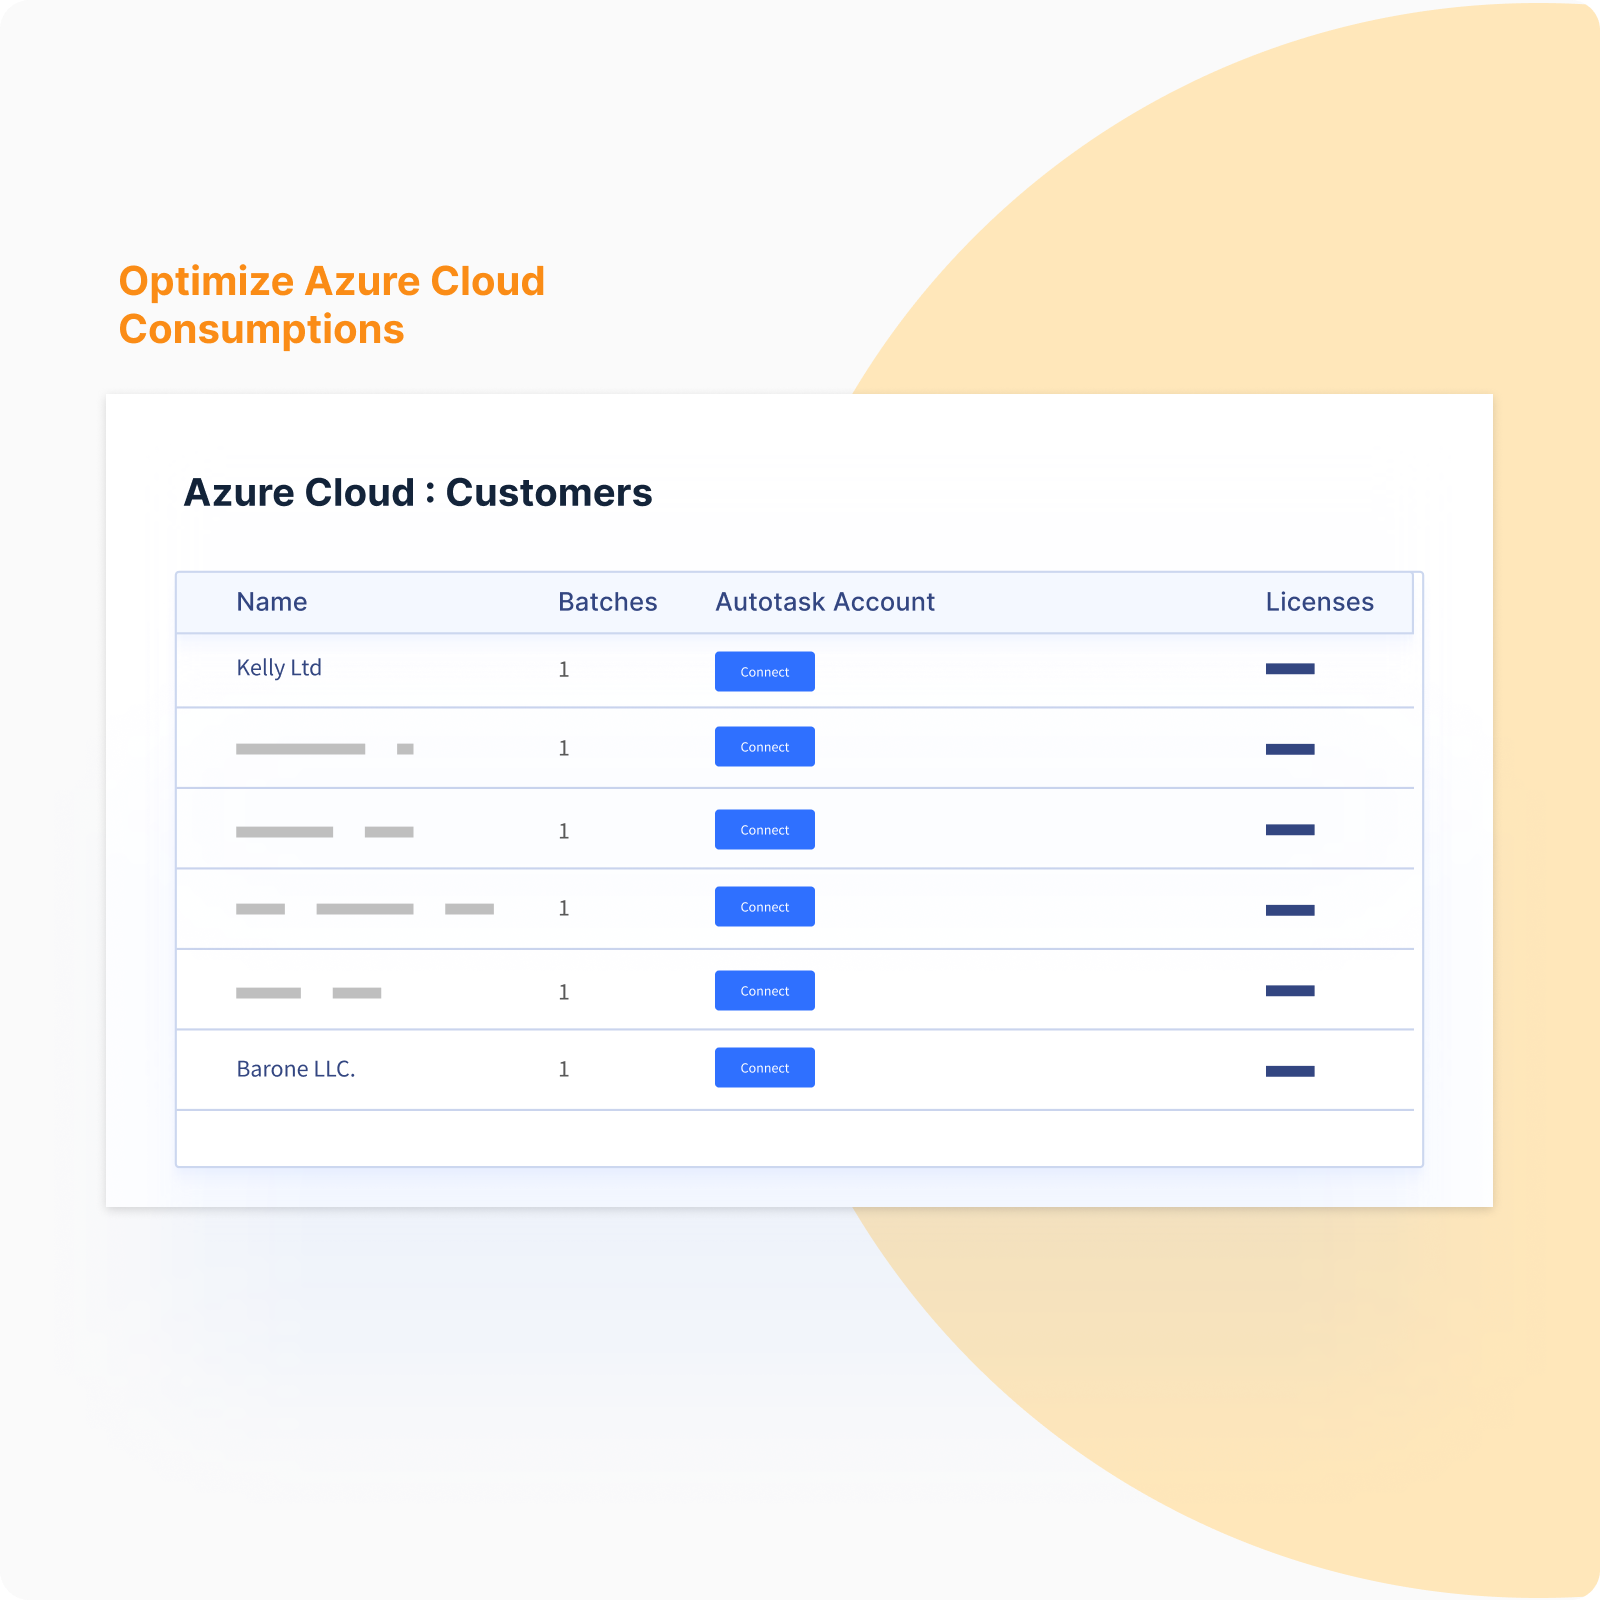 Optimize Azure Cloud Consumptions